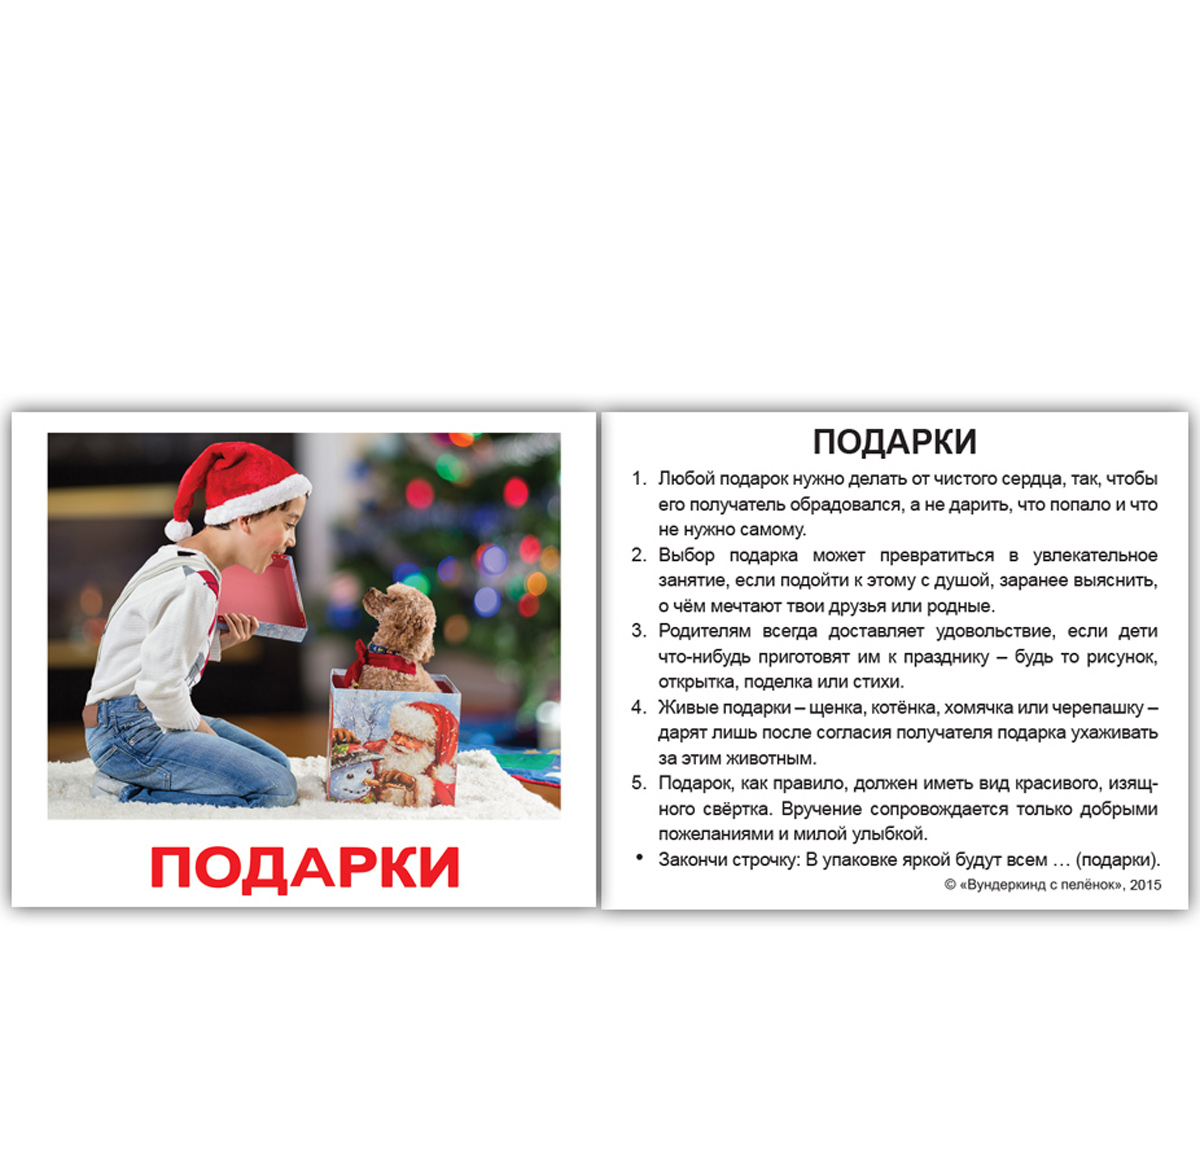 Картки Домана міні російські з фактами 'Правила поведінки'